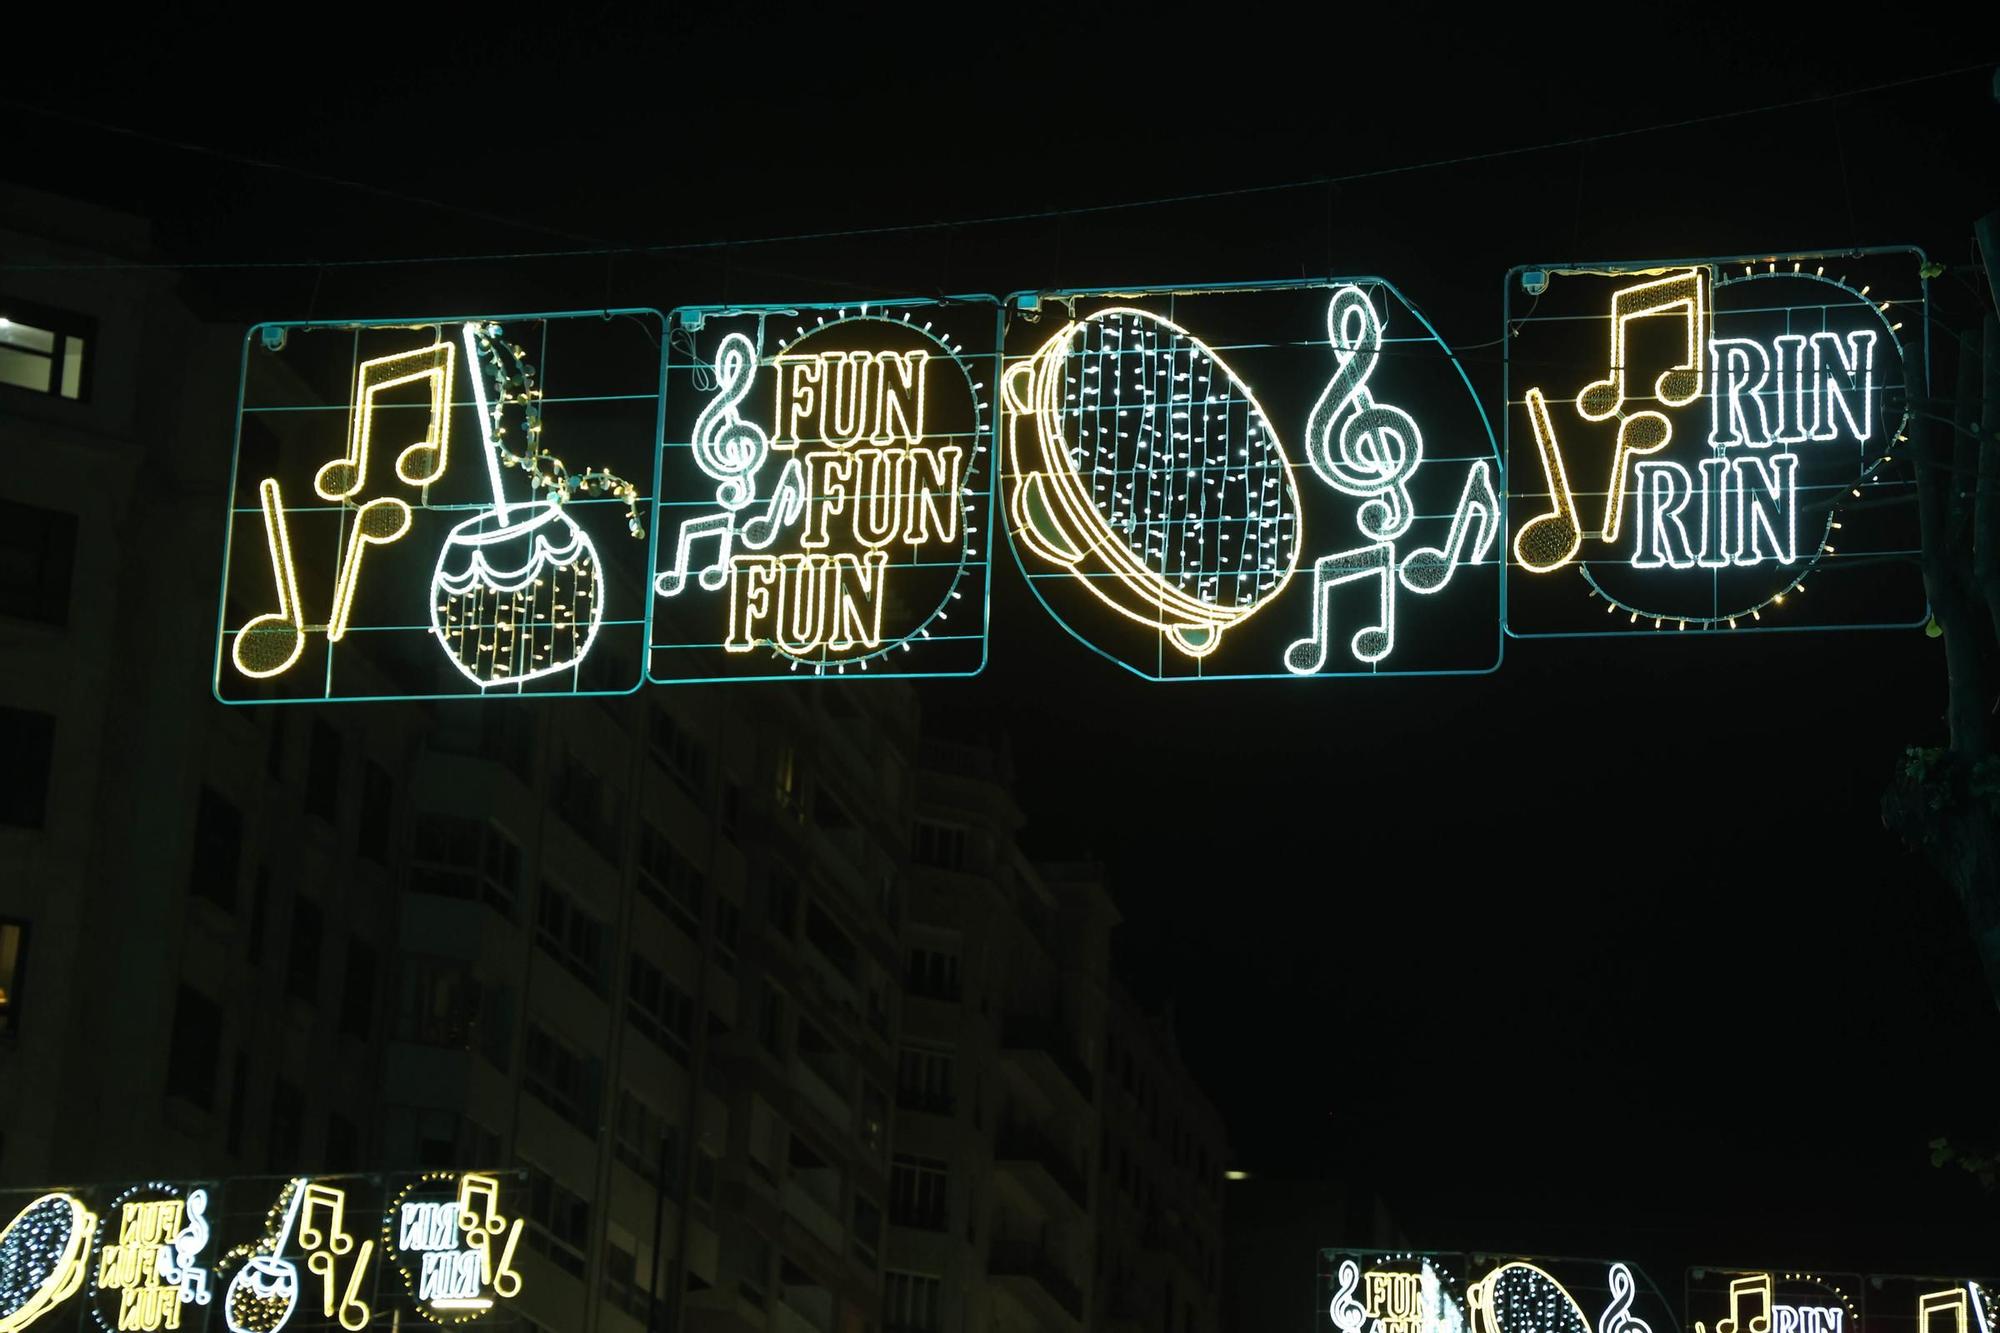 La Navidad de Vigo ya deslumbra al mundo